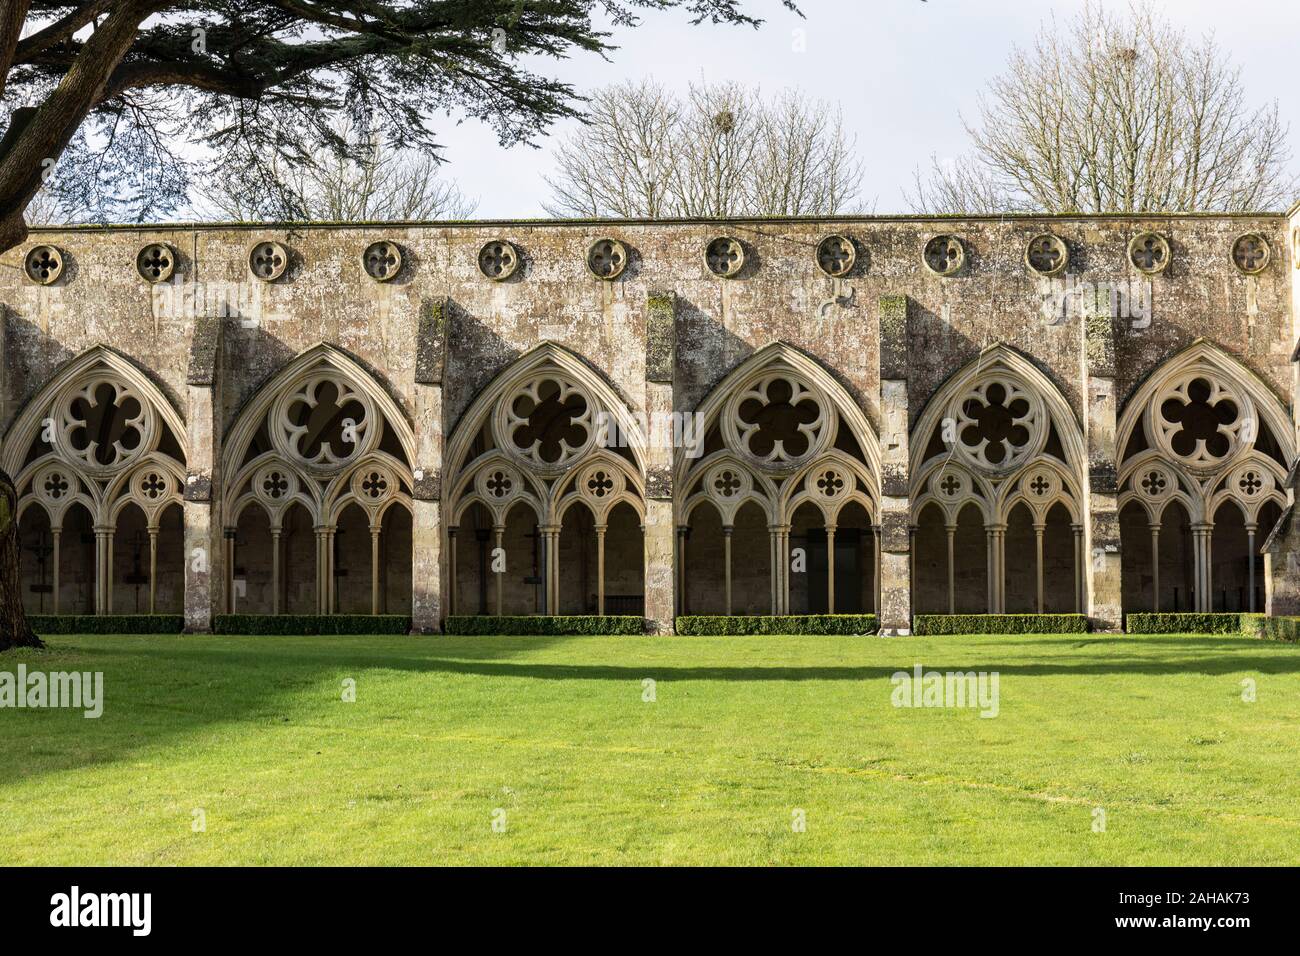 La arquitectura ornamentada de los claustros góticos con arcos, el jardín del claustro de la catedral de Salisbury, Wiltshire, Inglaterra, Reino Unido Foto de stock